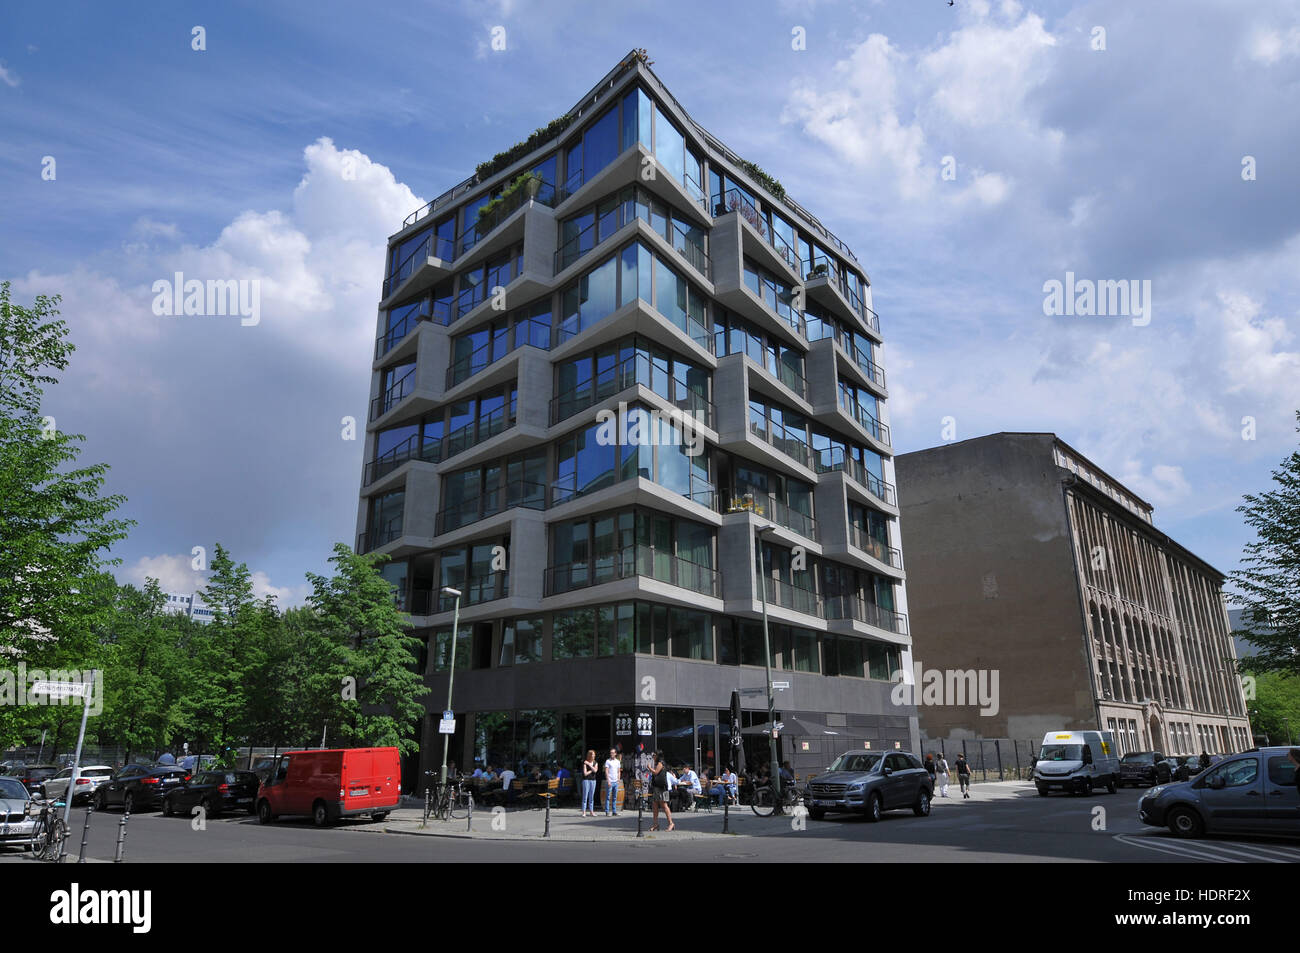 Apartmenthaus, Charlottenstrasse 19, Mitte, Berlin, Deutschland Foto de stock